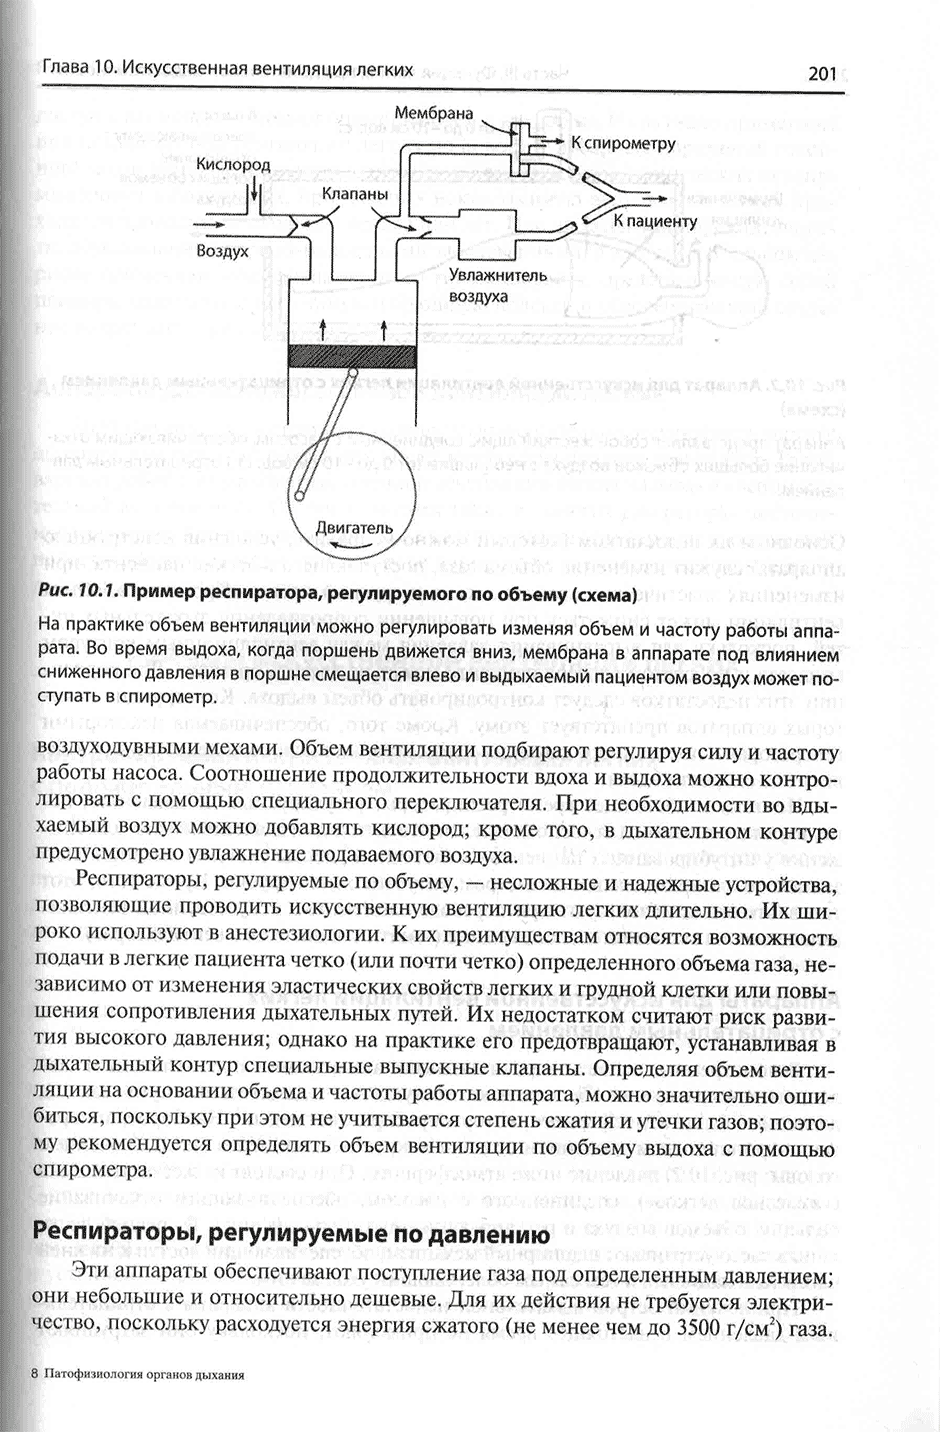 Рис. 10.1. Пример респиратора, регулируемого по объему (схема)